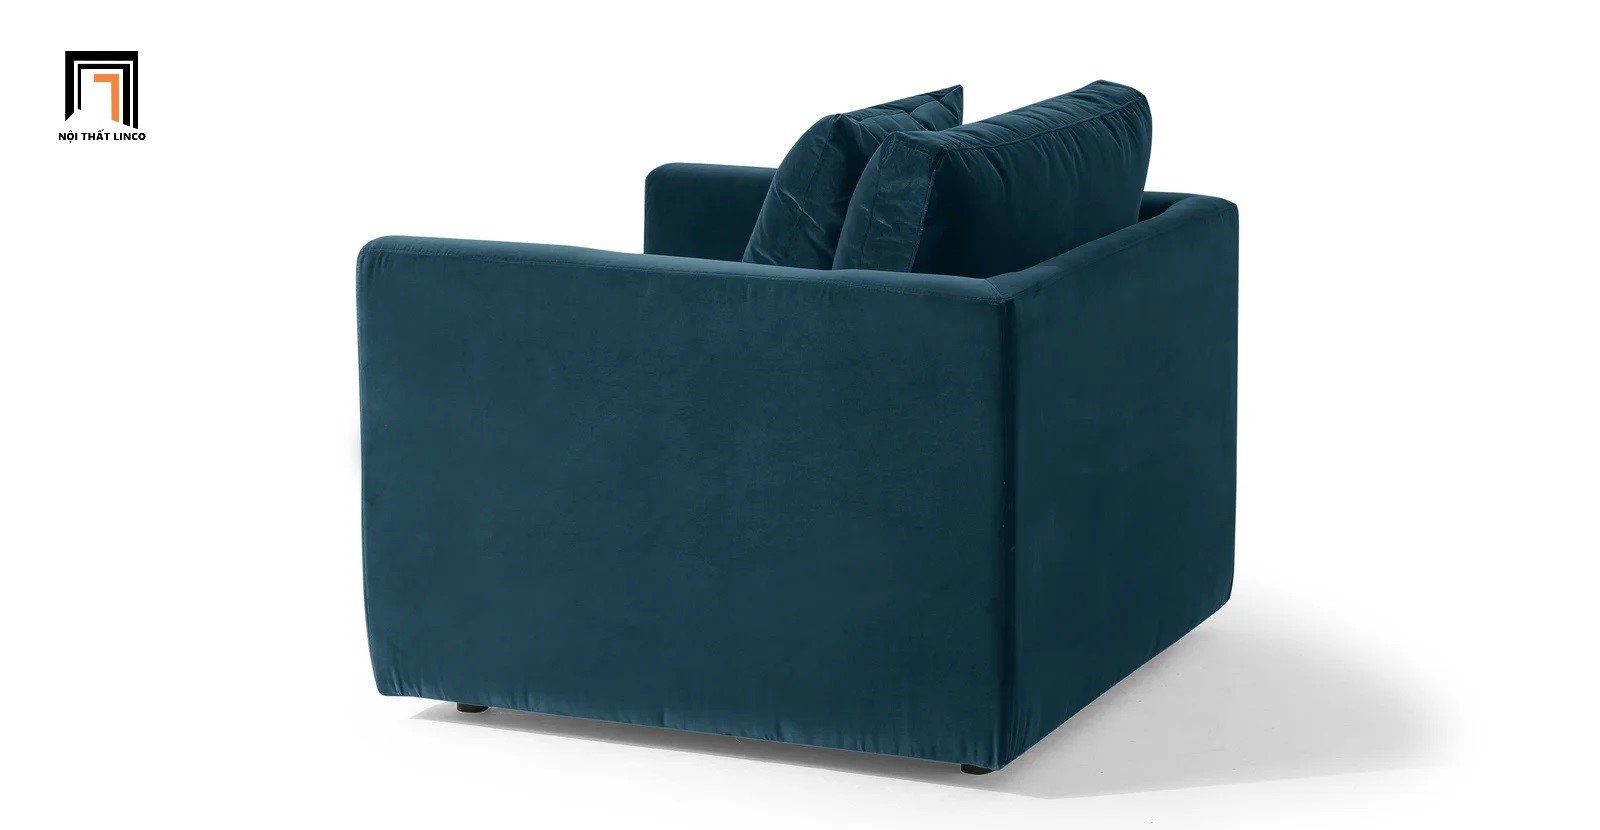  Ghế sofa nhỏ vải nhung DT37 Camdyn màu xanh đậm 